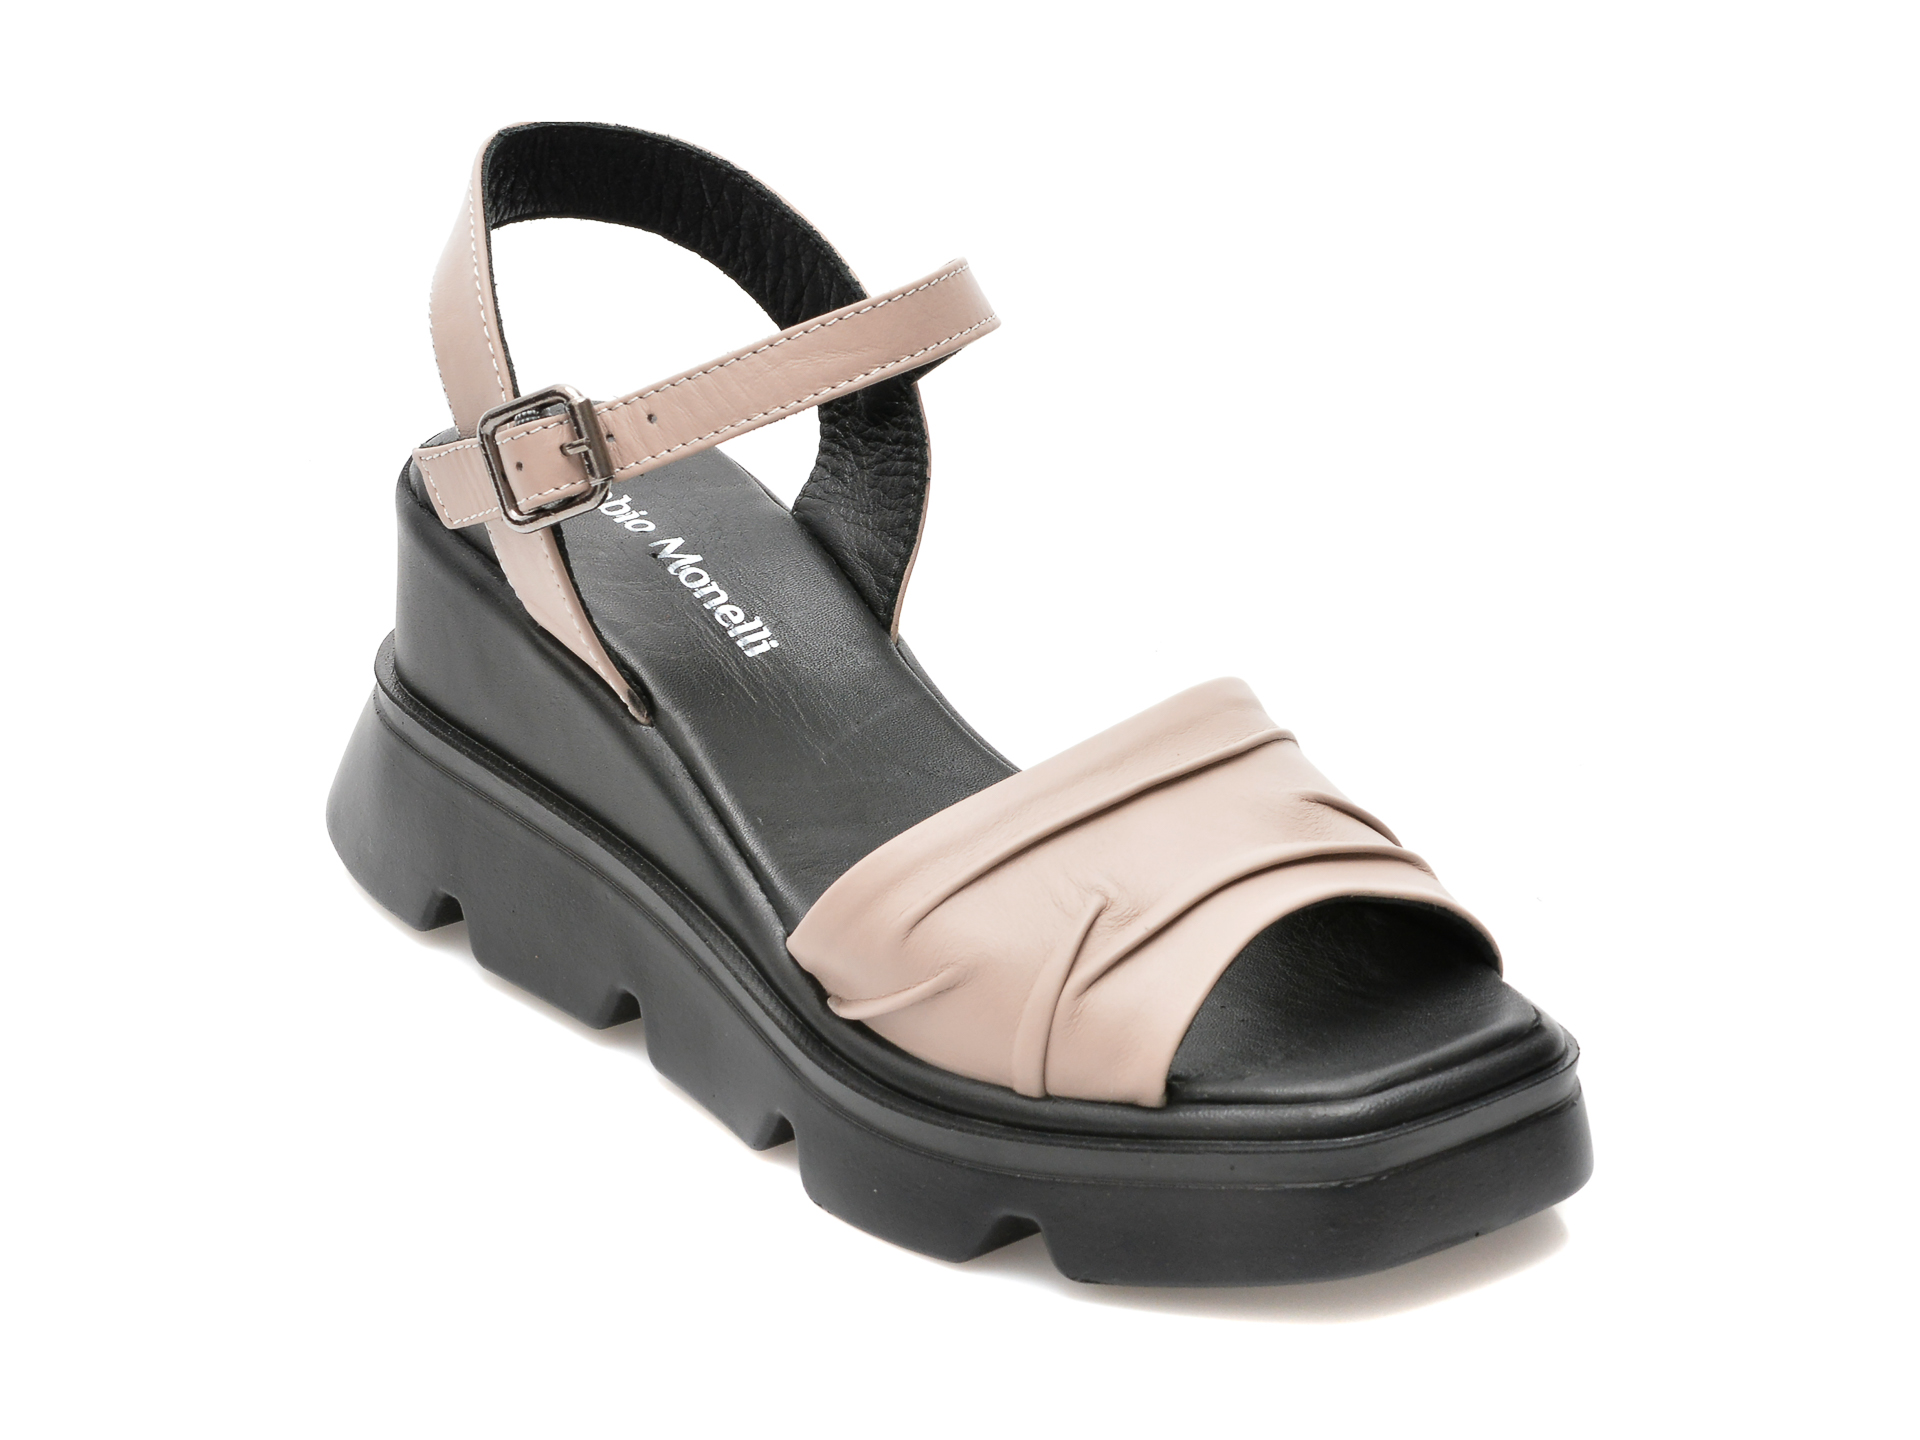 Sandale FABIO MONELLI gri, 778, din piele naturala /femei/sandale